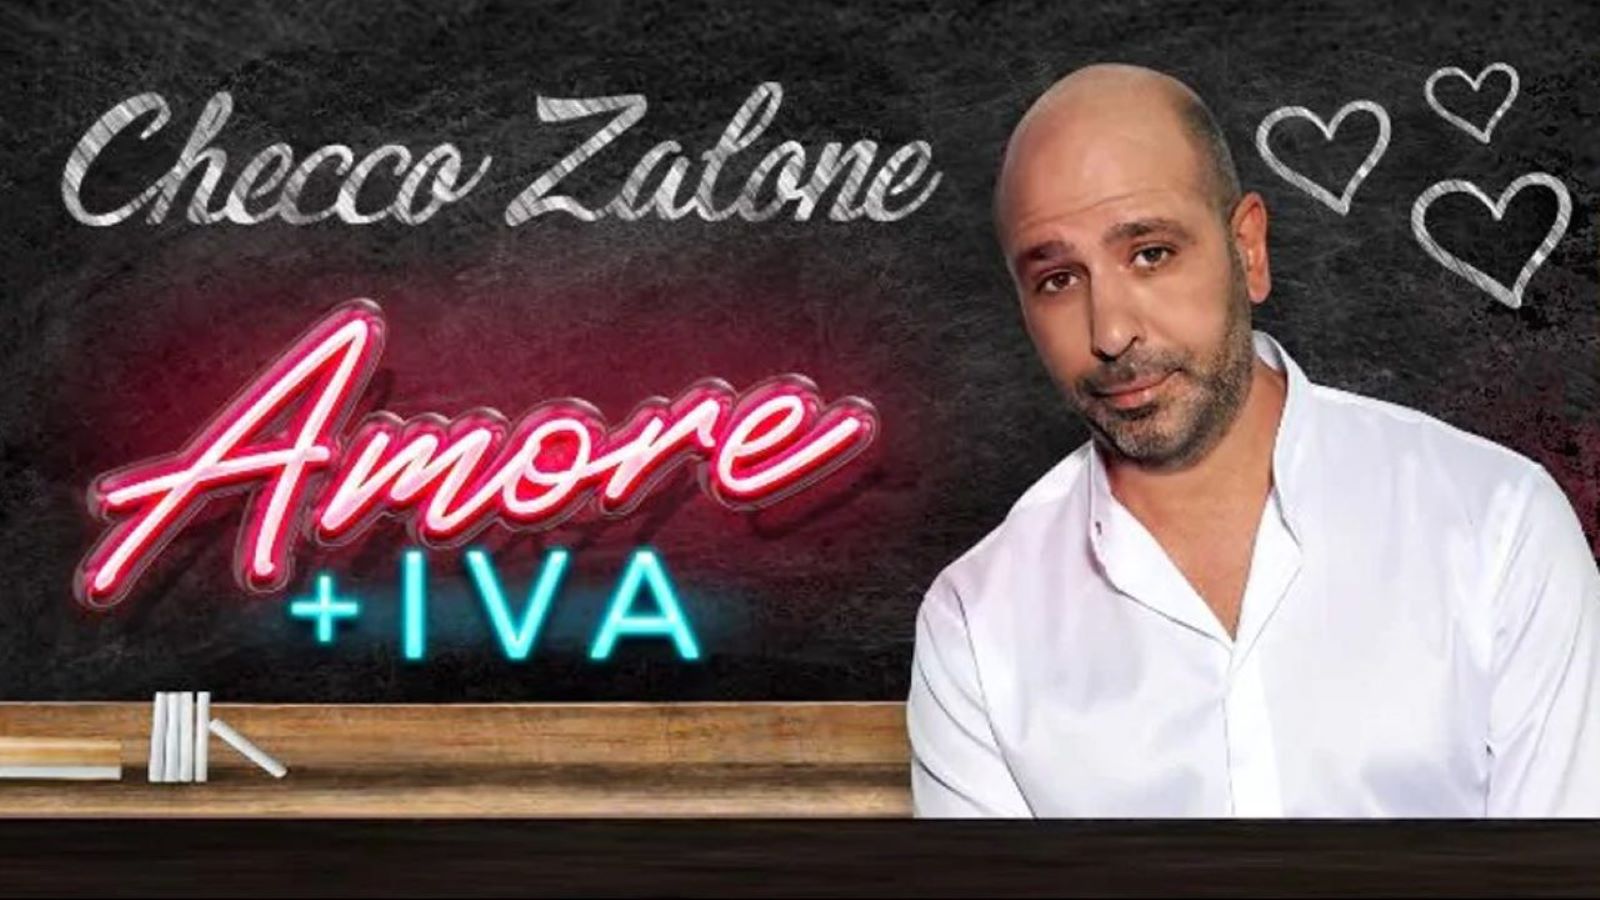 Amore + IVA stasera su Canale 5: lo spettacolo dei record di Checco Zalone